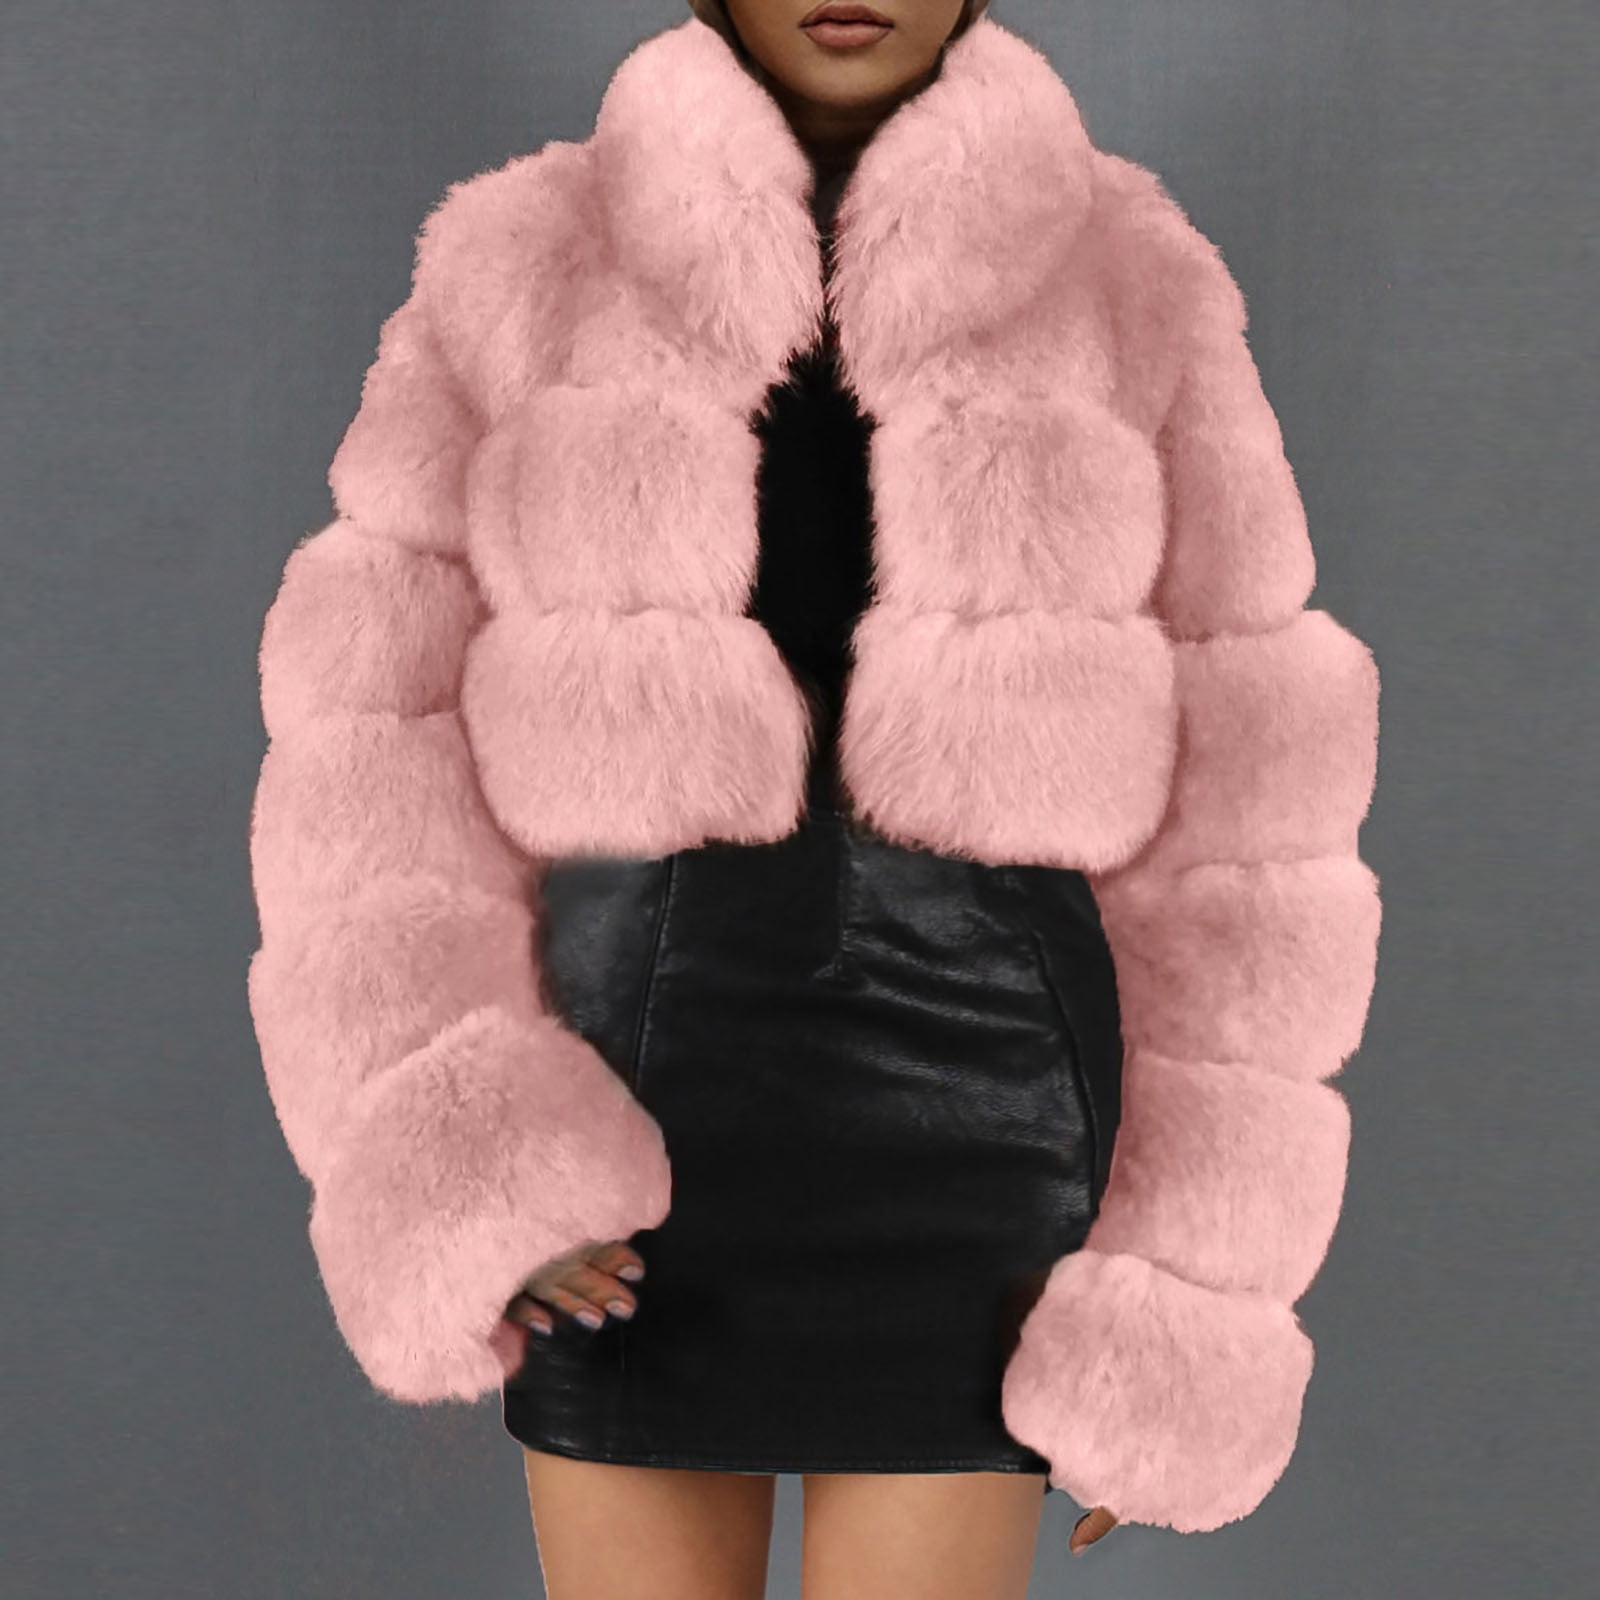 Symoid Womens Faux Fur Coats & Jackets- Ladies Warm Faux Fur Coat Jacket Winter Solid Hooded Outerwear Black S, Women's, Size: Small